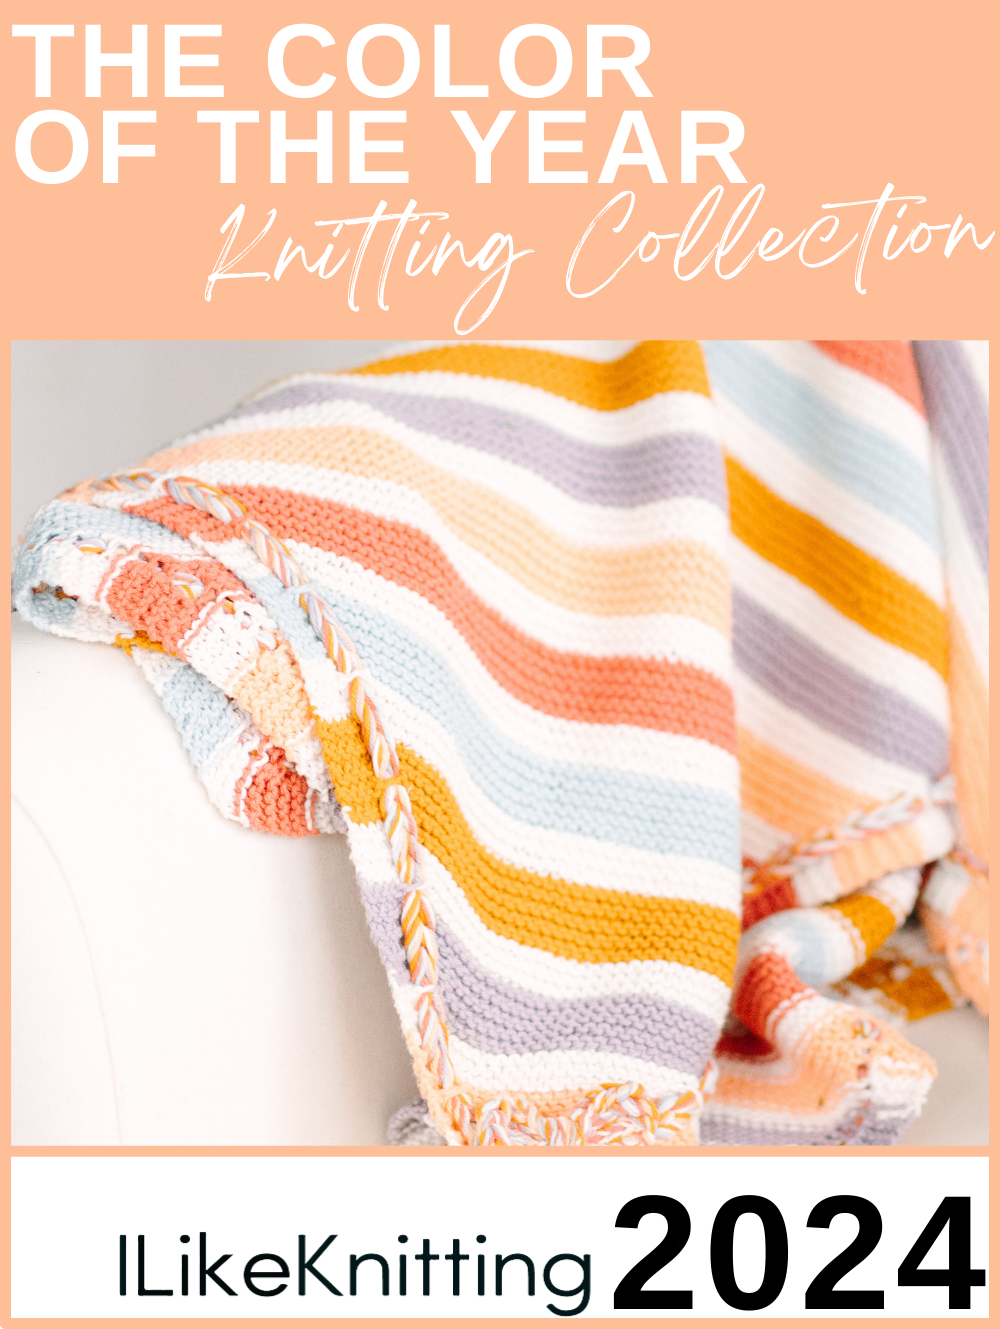 New Knitting Books for Winter 2022 - I Like Knitting